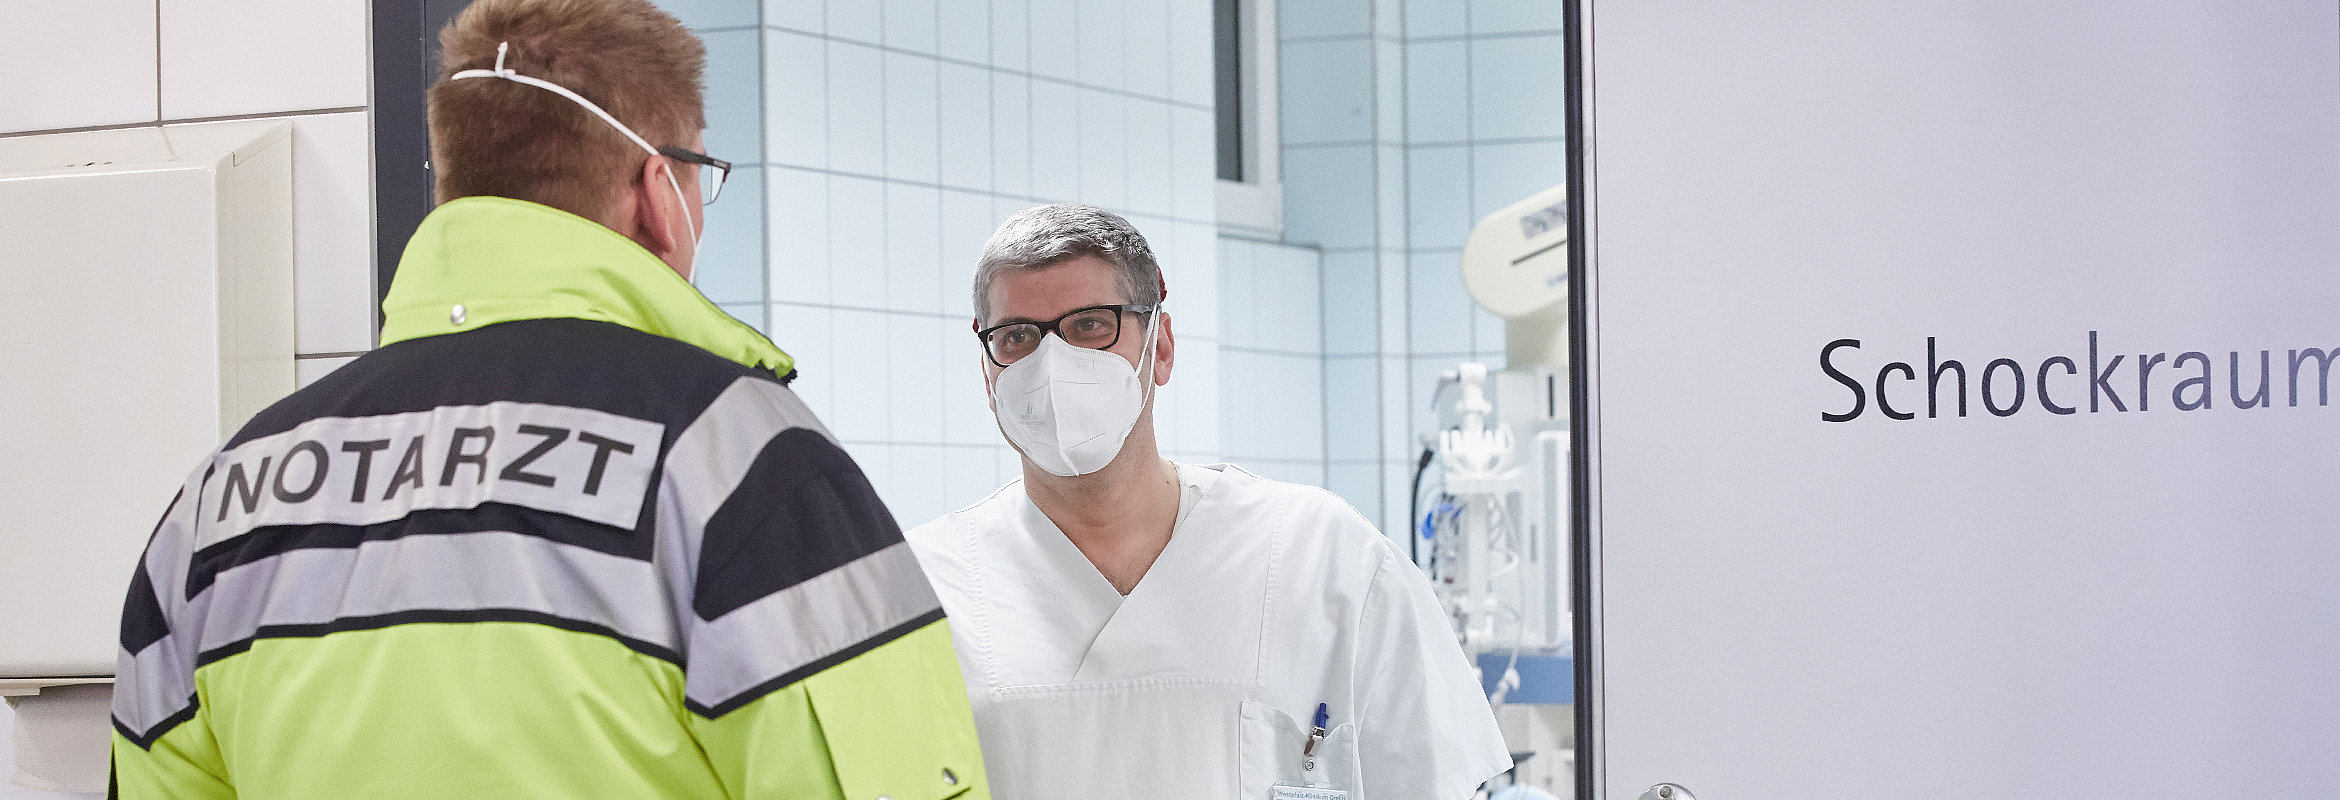 Dr. med. Jens Kling, Chefarzt der Klinik für Anästhesie, Intensiv- und Notfallmedizin Kirchheimbolanden, als Notarzt im Einsatz